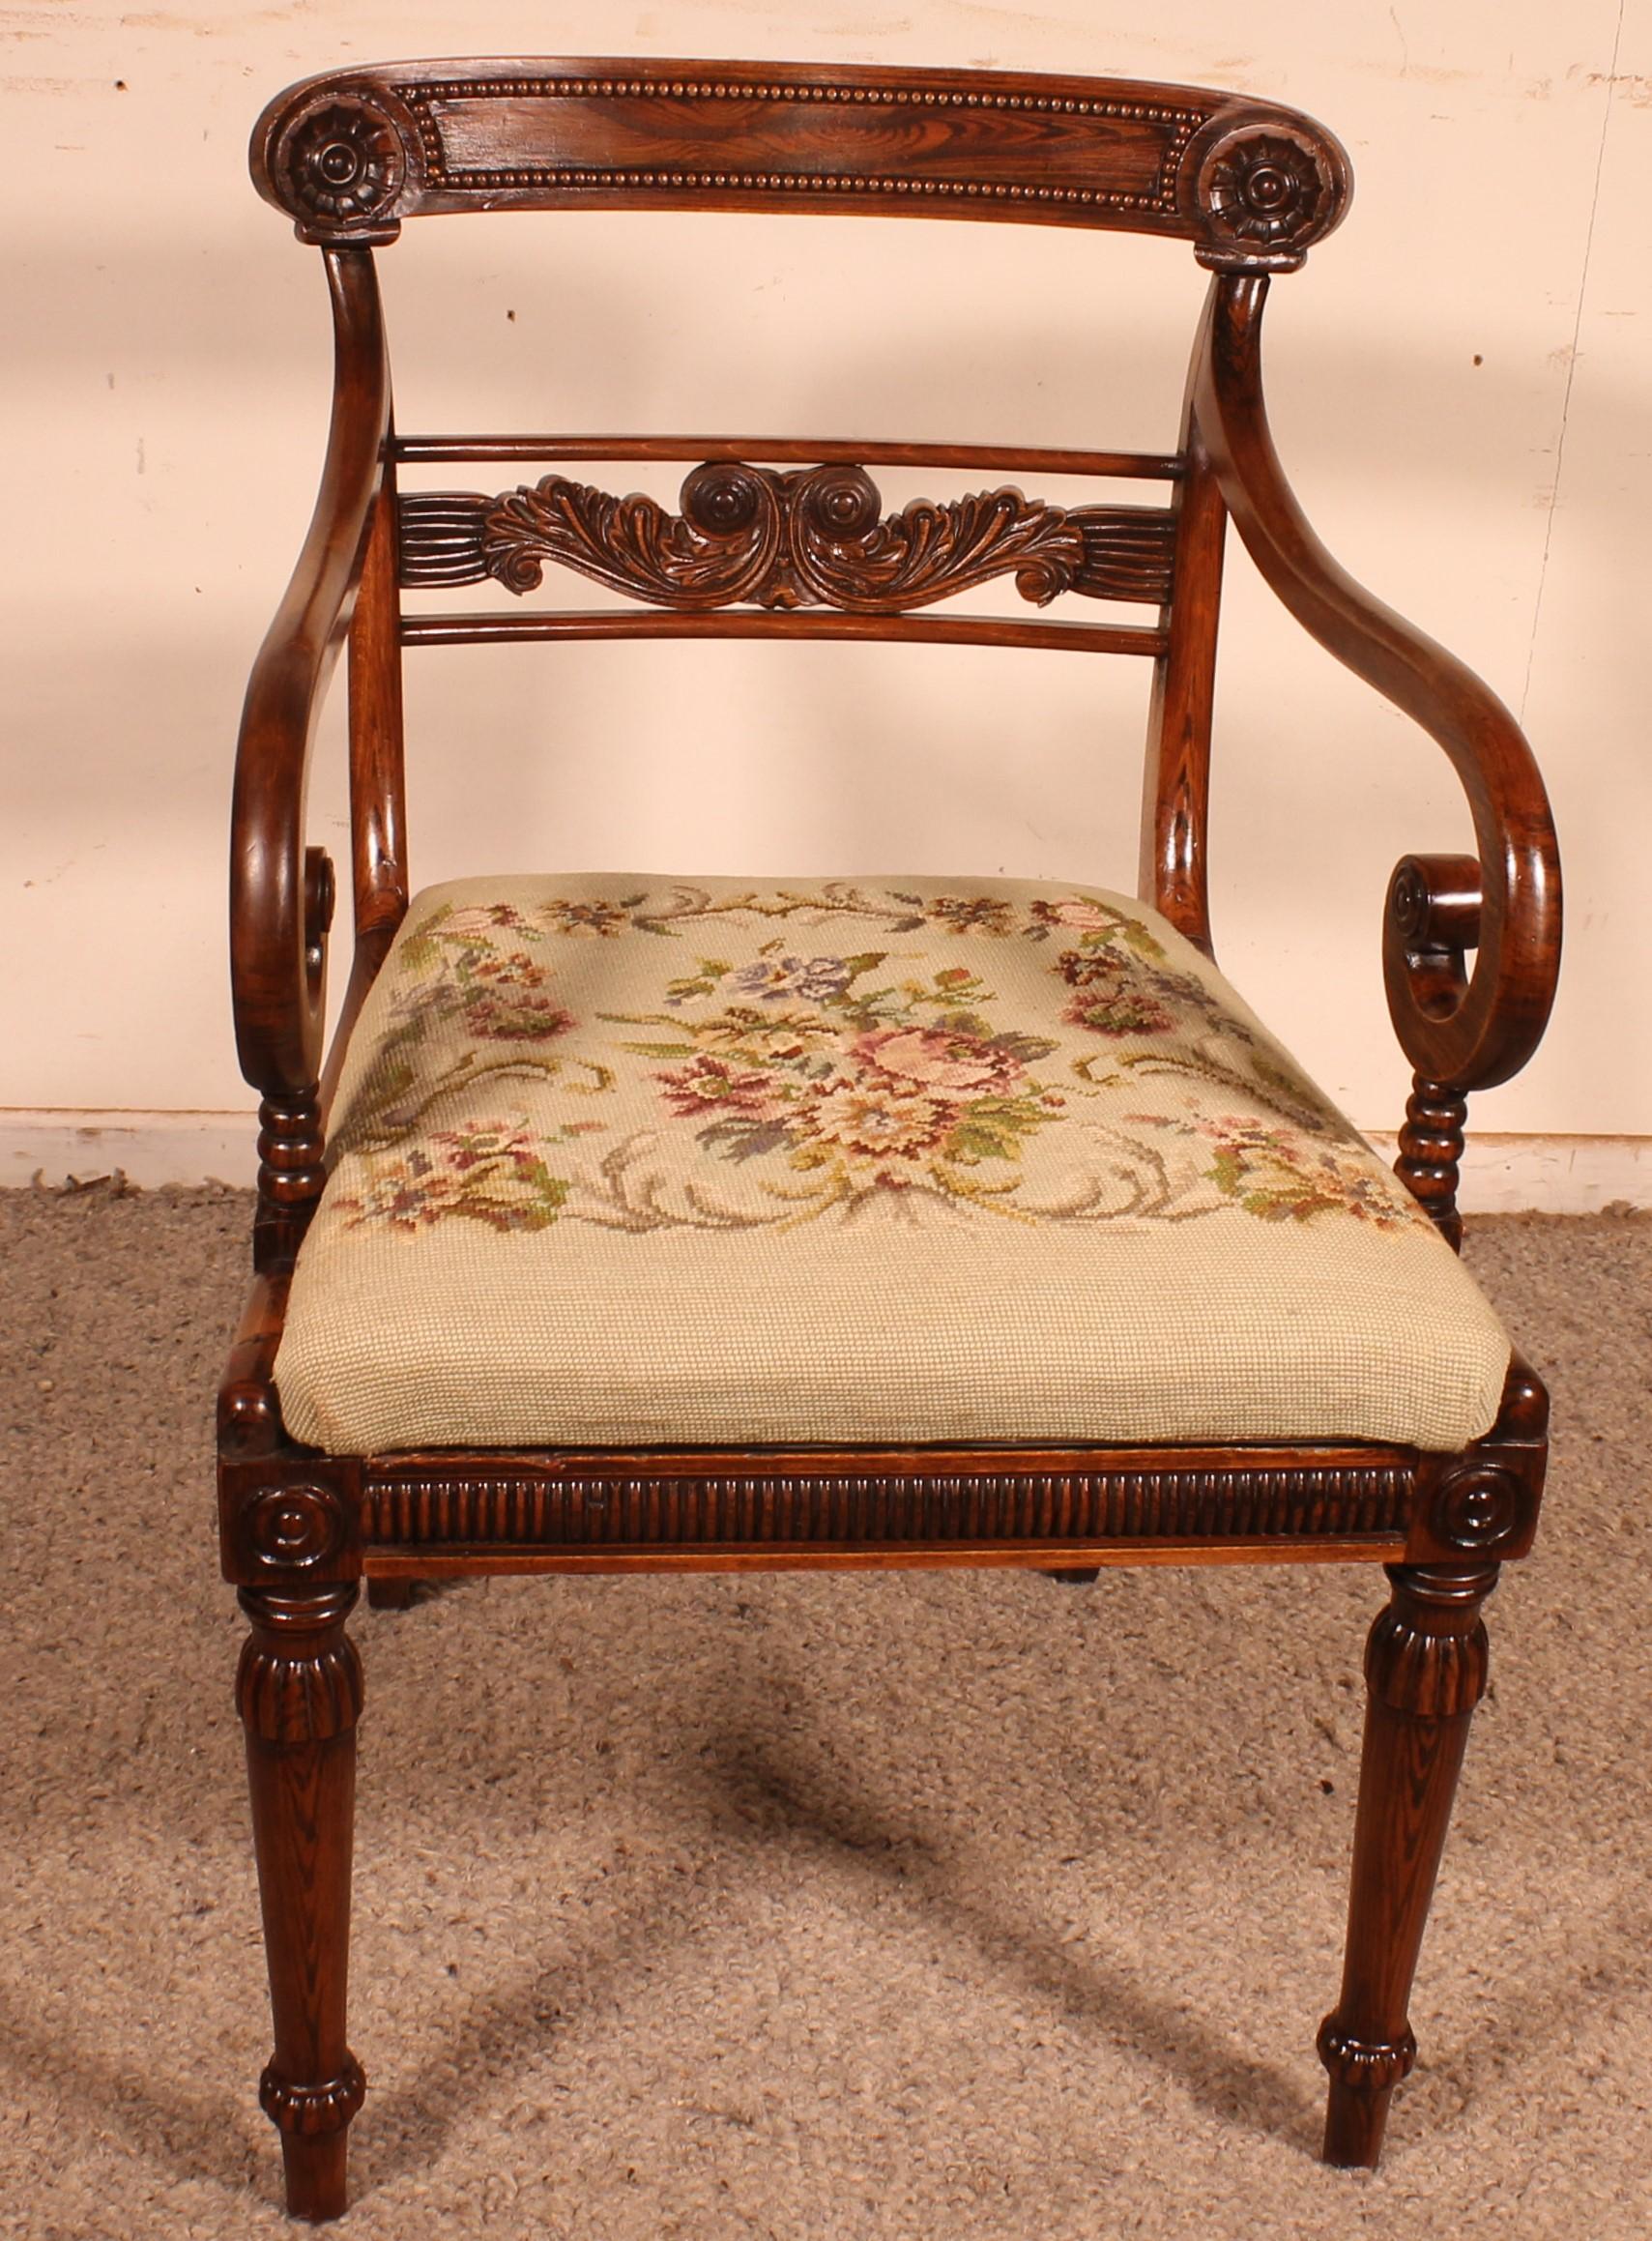 Schöner Palisander-Sessel aus dem Anfang des 19. Jahrhunderts Regency-Periode
Sehr schöner, mit einer Perle verzierter Sockel Die Rückenlehne ist ebenfalls mit einer Perle sowie einer Schnitzerei in der Mitte verziert
Die Sitzfläche ist mit einem